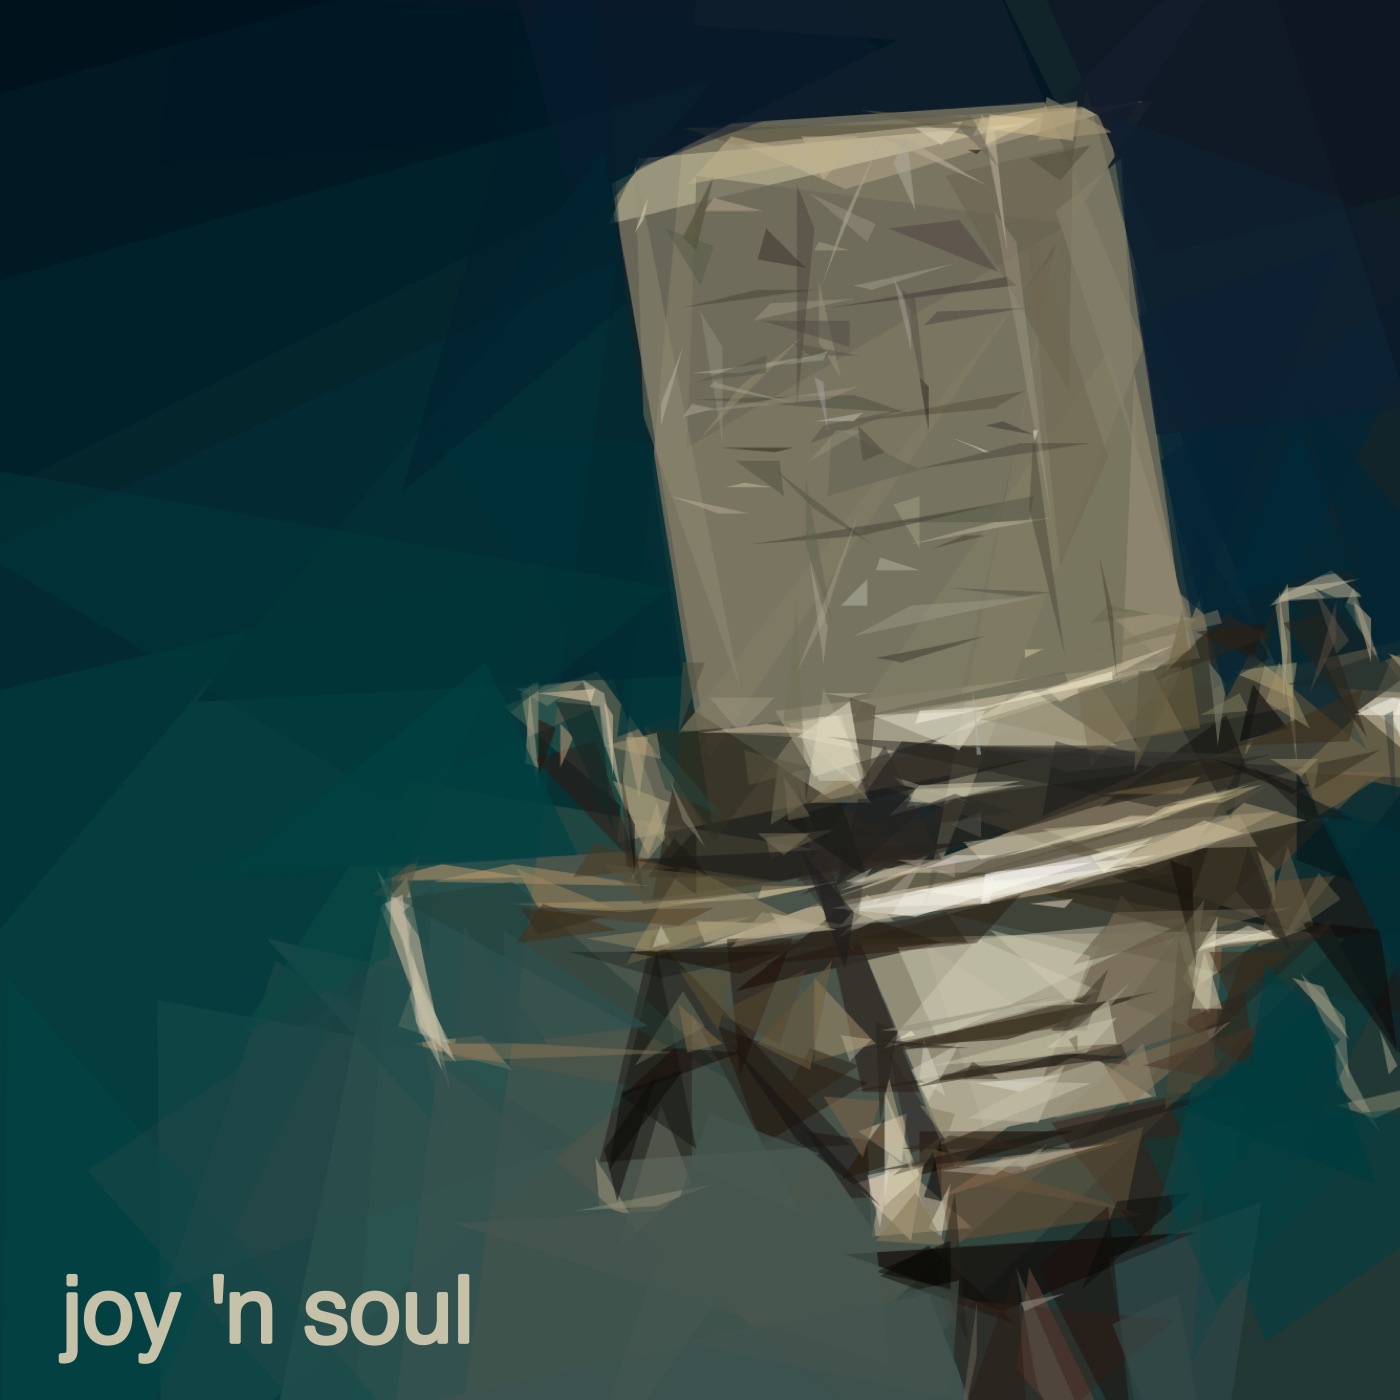 Joy 'n' soul